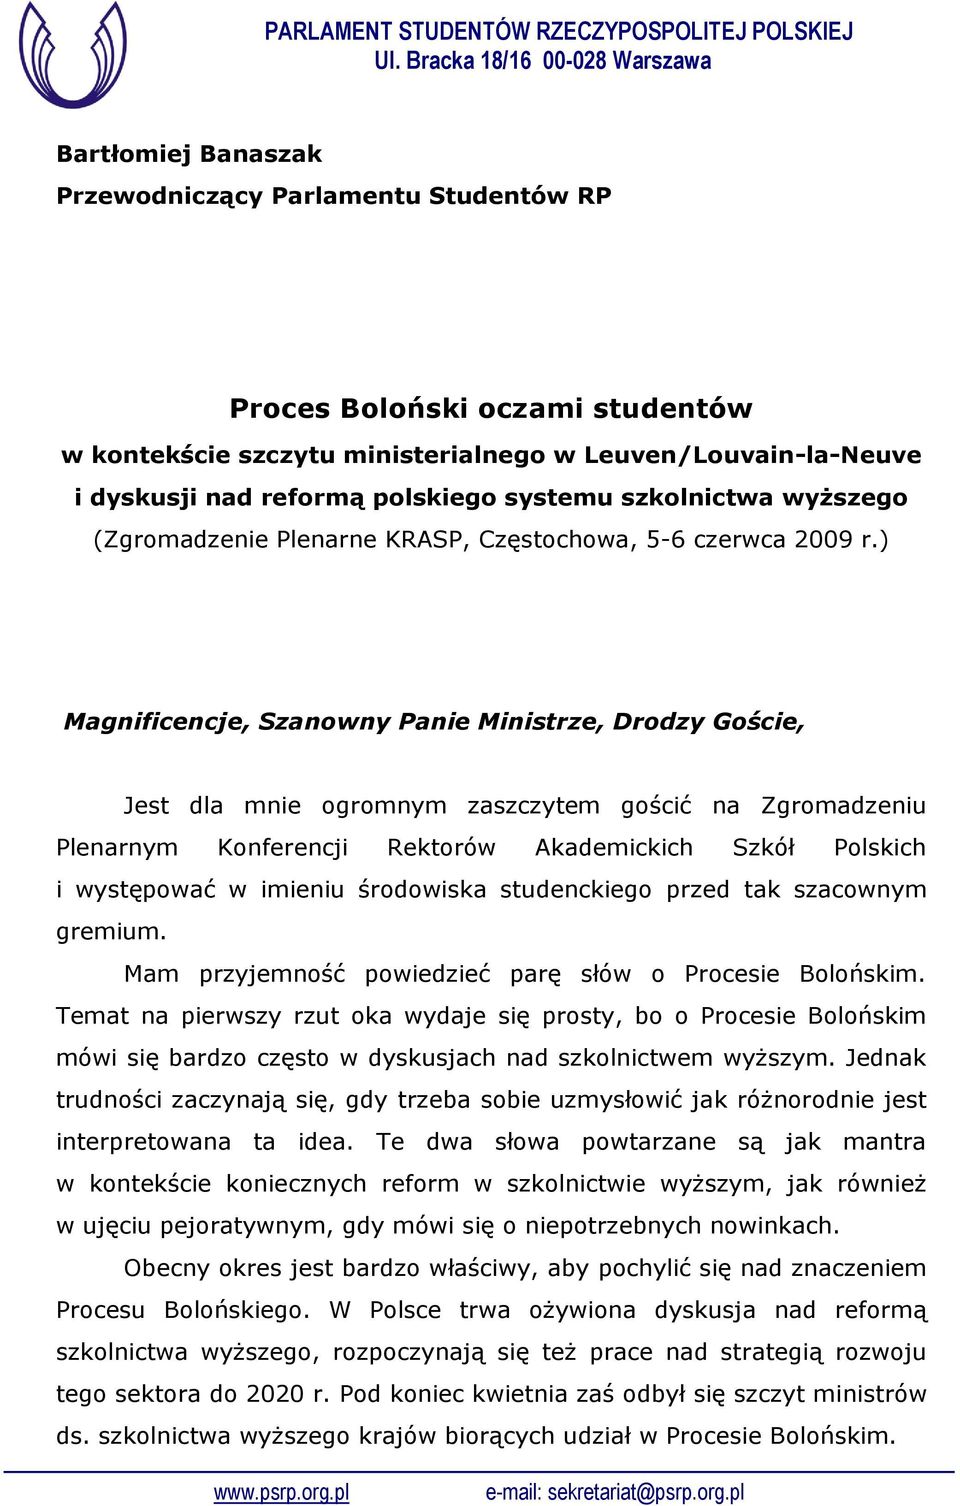 ) Magnificencje, Szanowny Panie Ministrze, Drodzy Goście, Jest dla mnie ogromnym zaszczytem gościć na Zgromadzeniu Plenarnym Konferencji Rektorów Akademickich Szkół Polskich i występować w imieniu